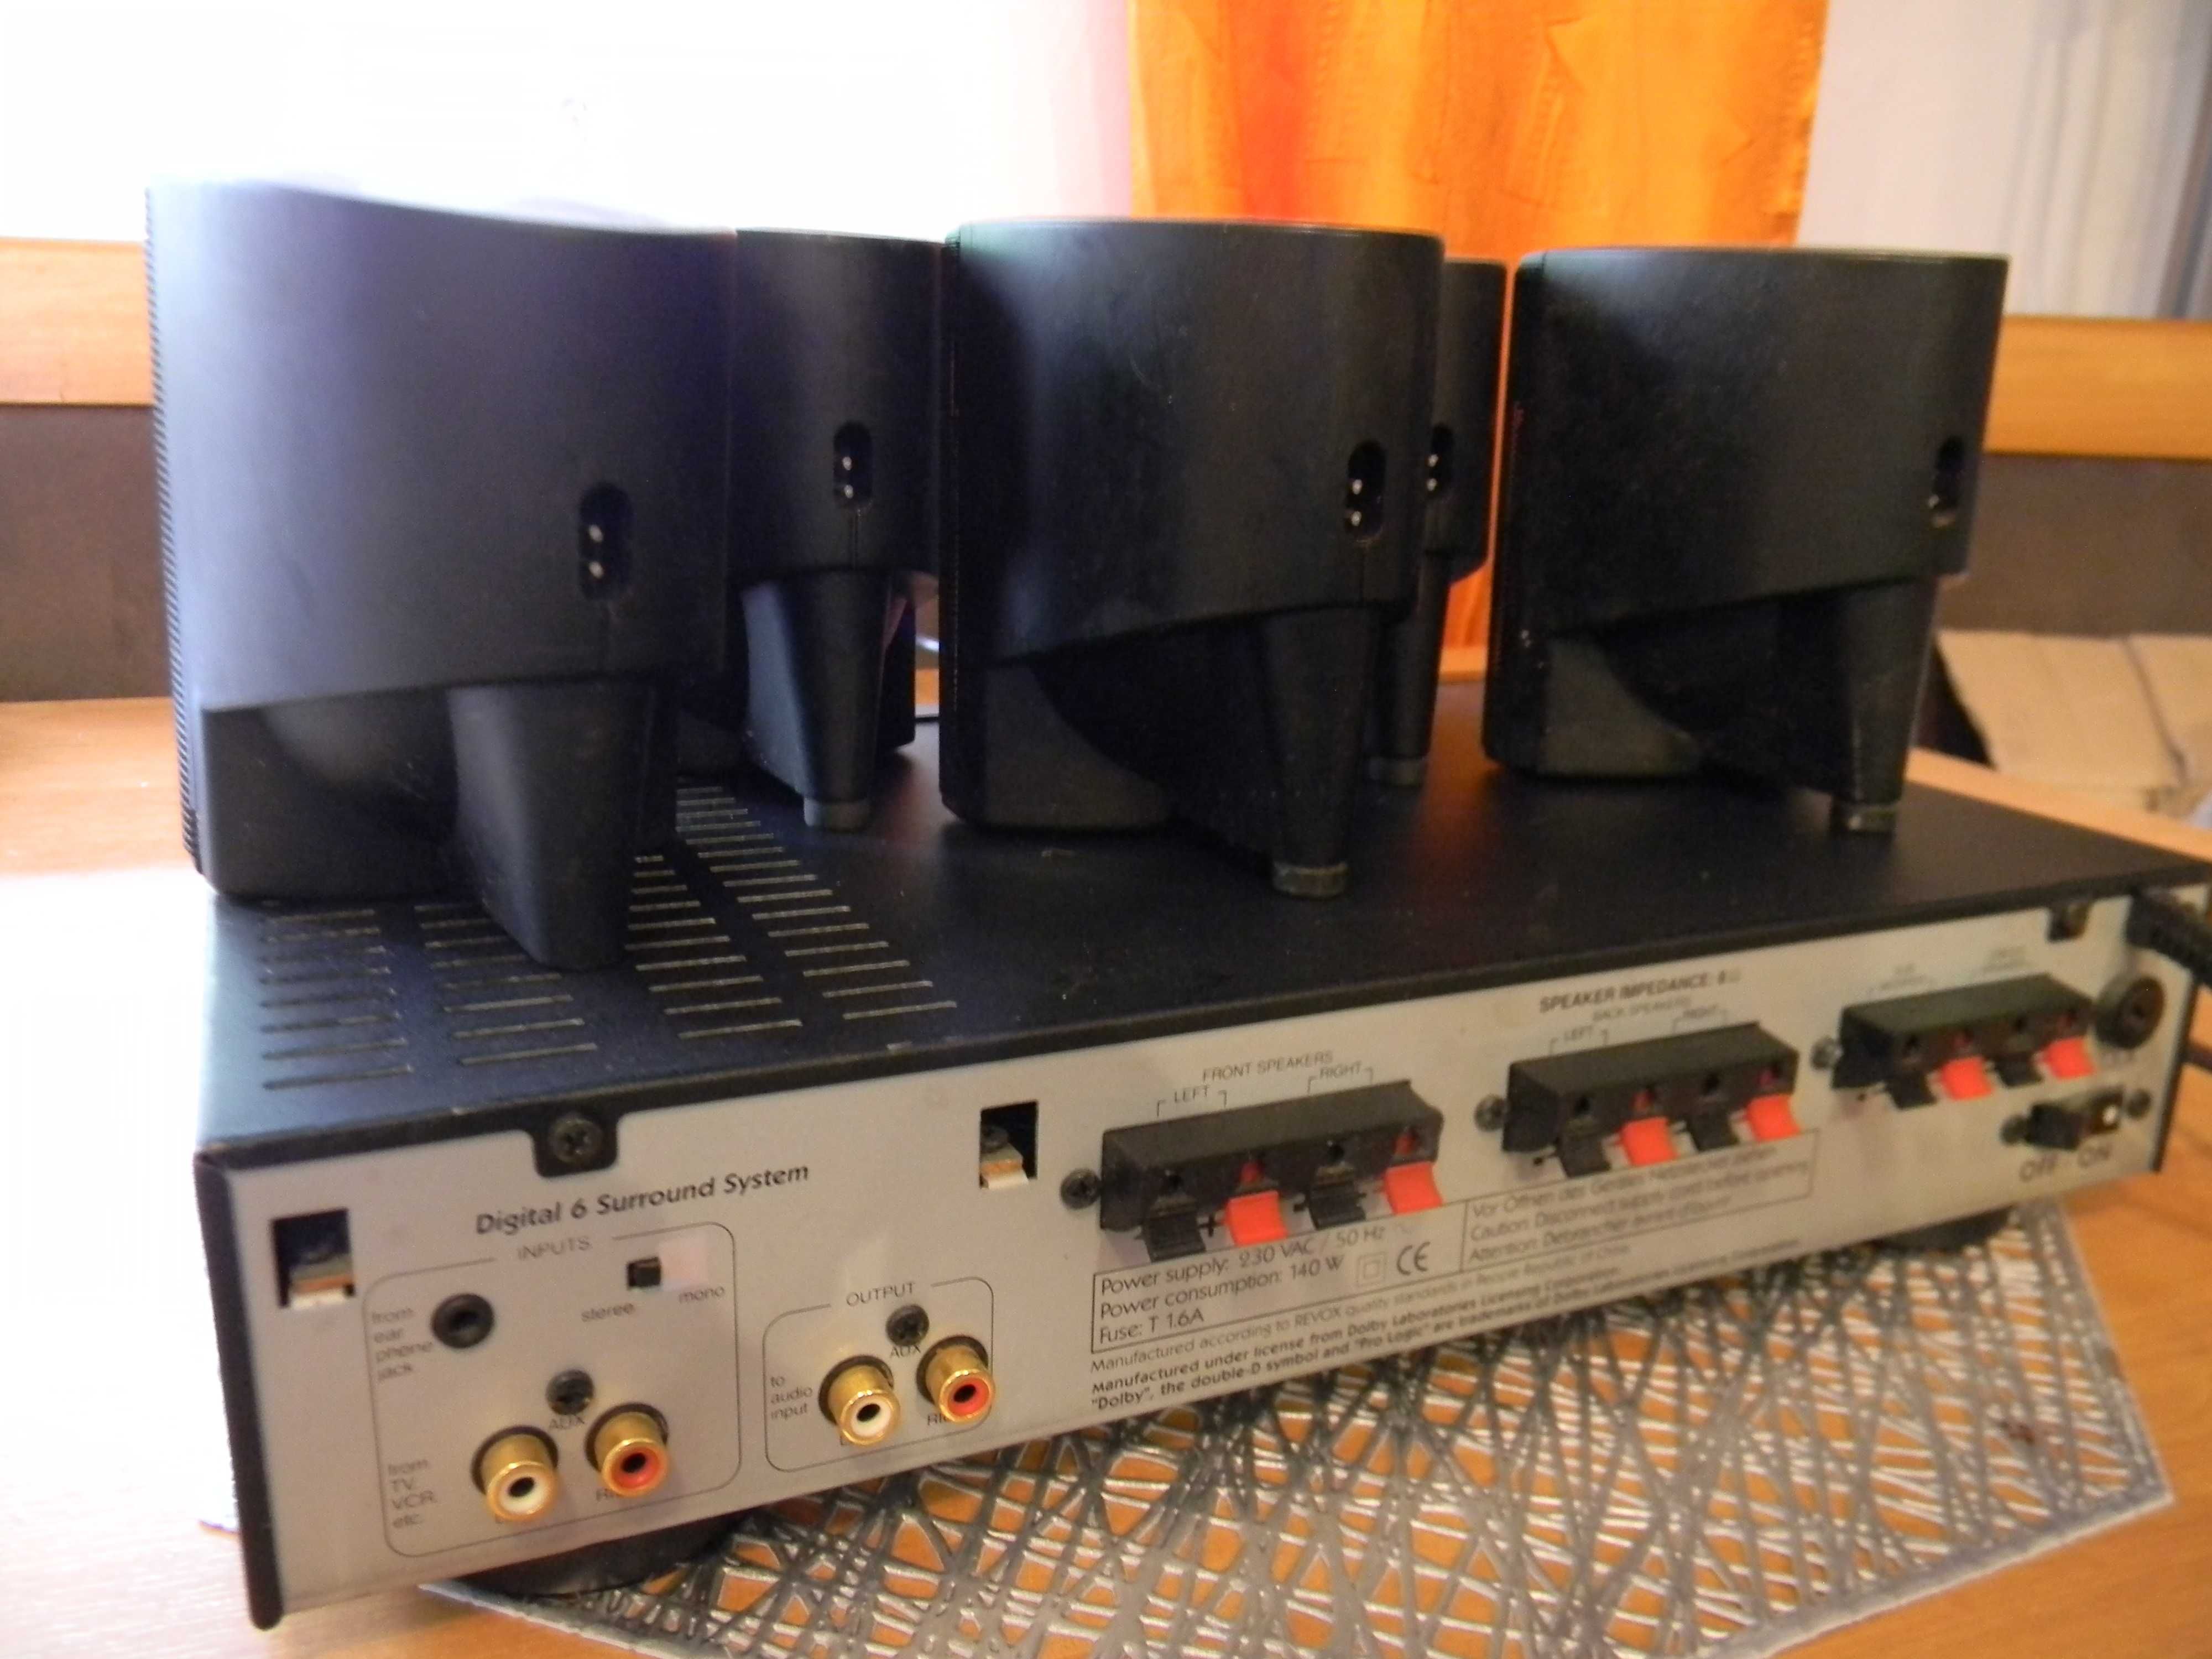 Procesor kina domowego CAMPUS by Revox z głośnikami UBL.